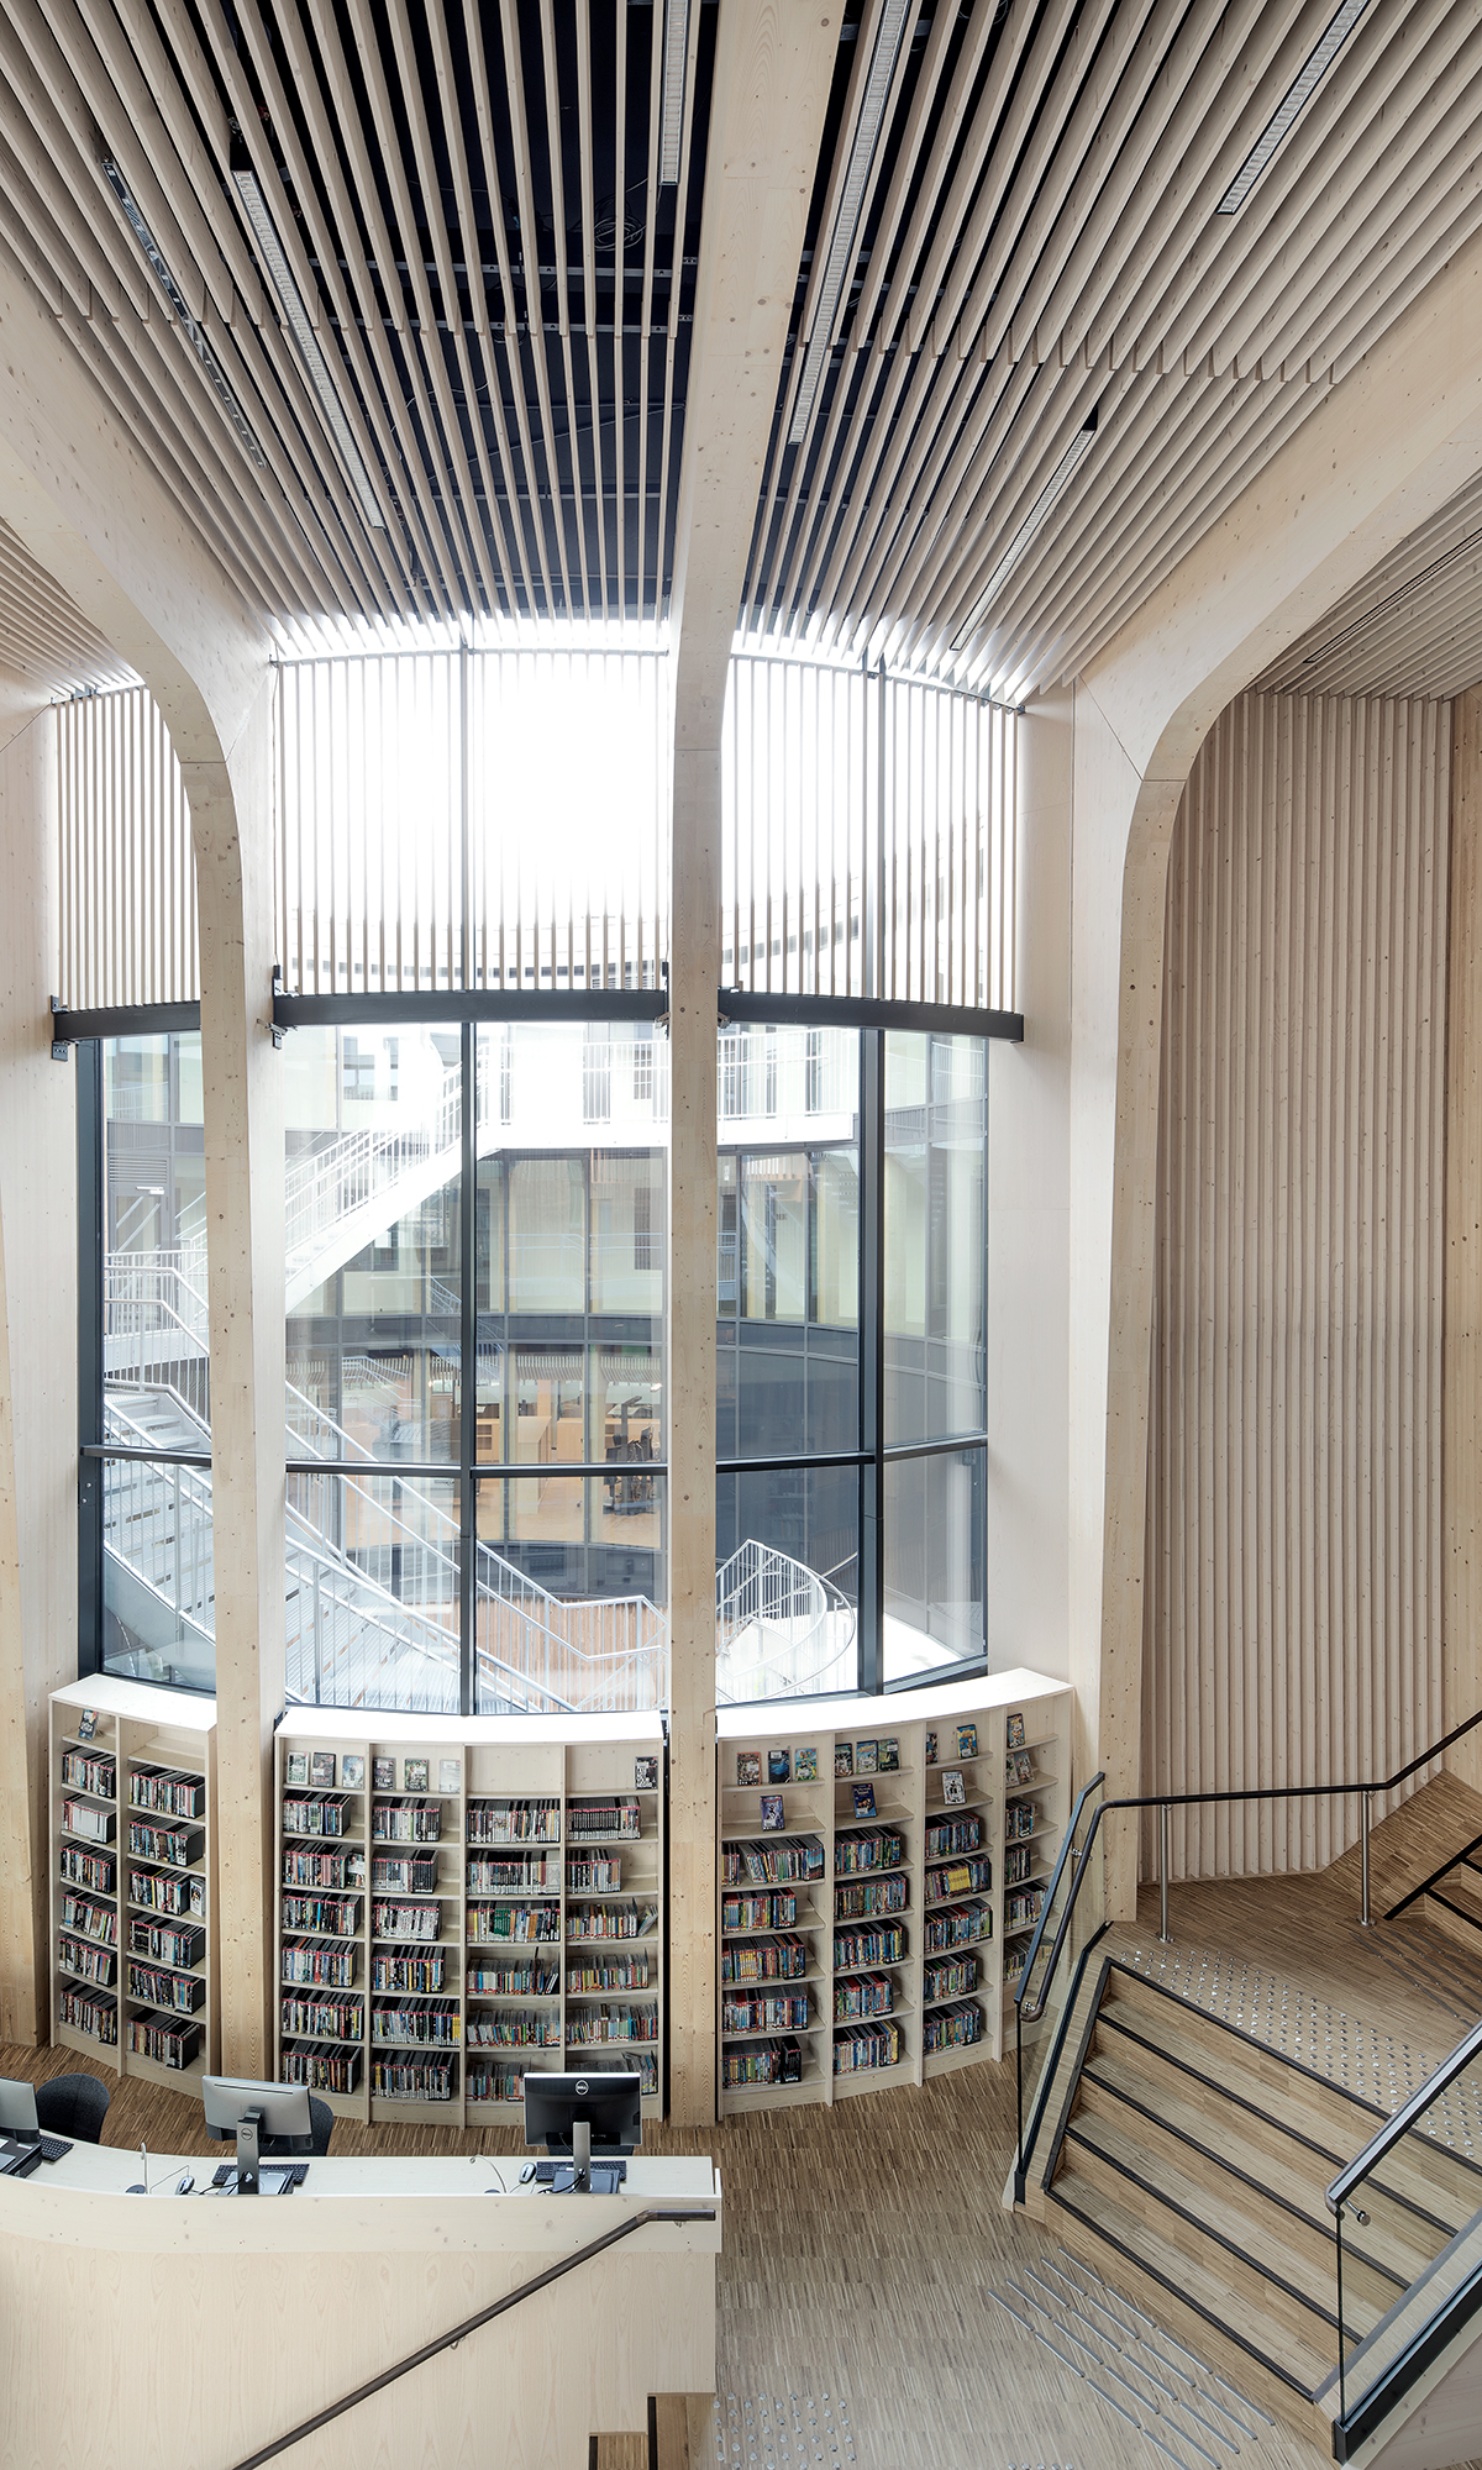 Helle Bibliothek mit Treppe, Bücherregalen und grosser Fensterfront.